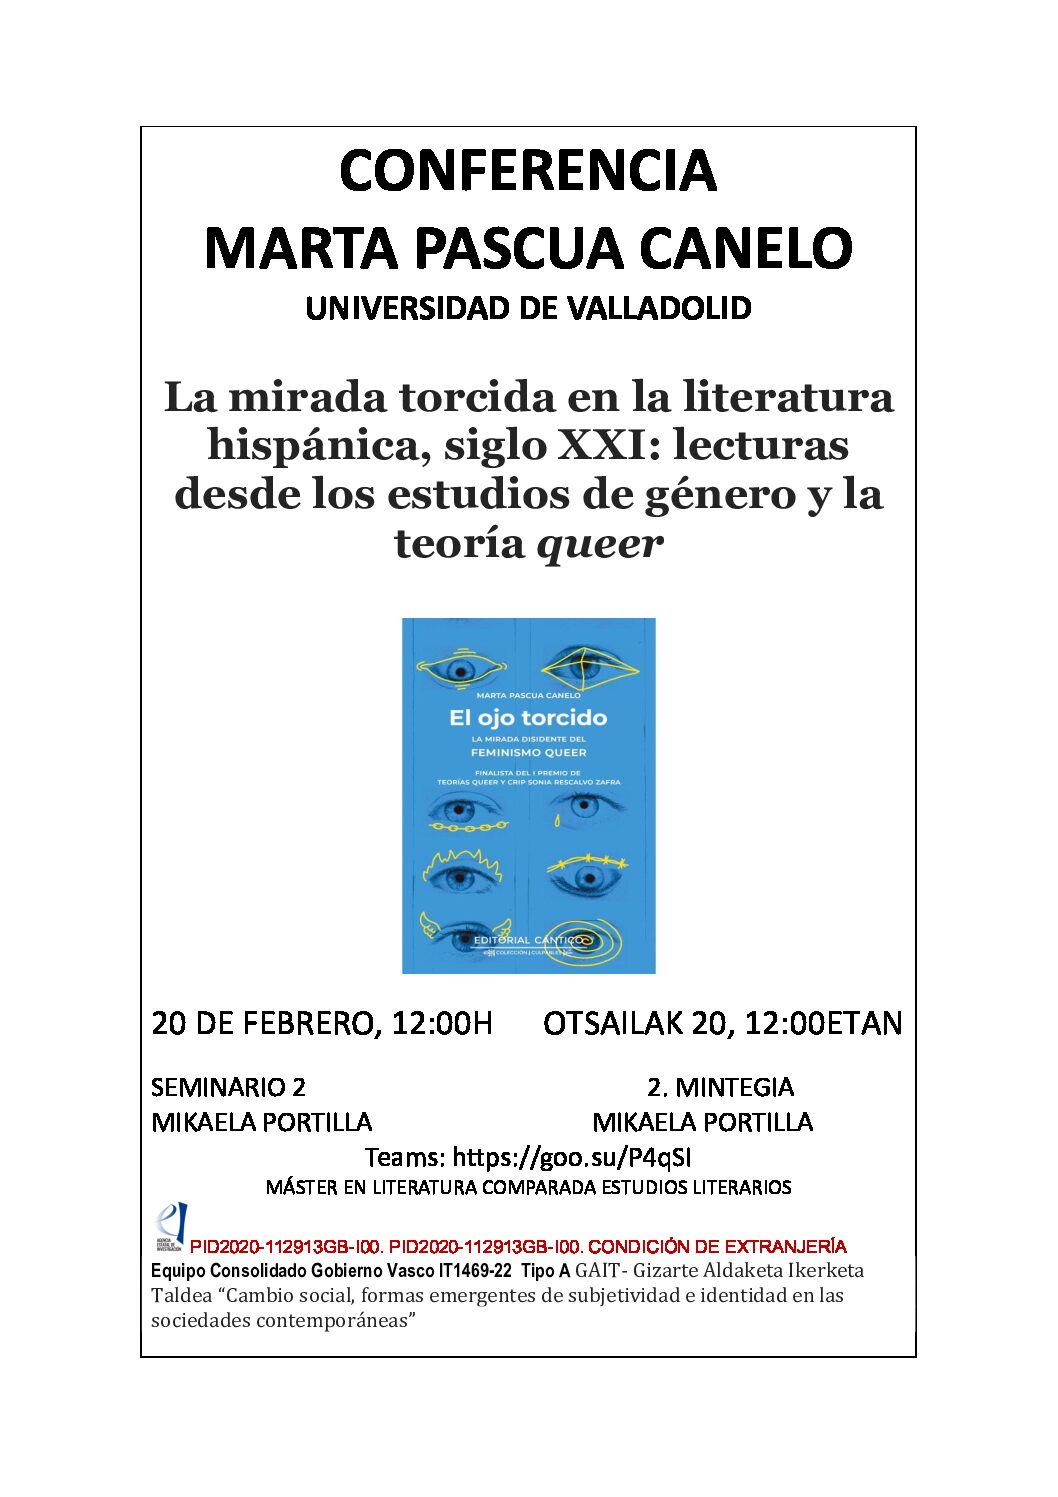 La mirada torcida en la literatura hispánica, siglo XXI: lecturas desde los estudios de género y la teoría queer